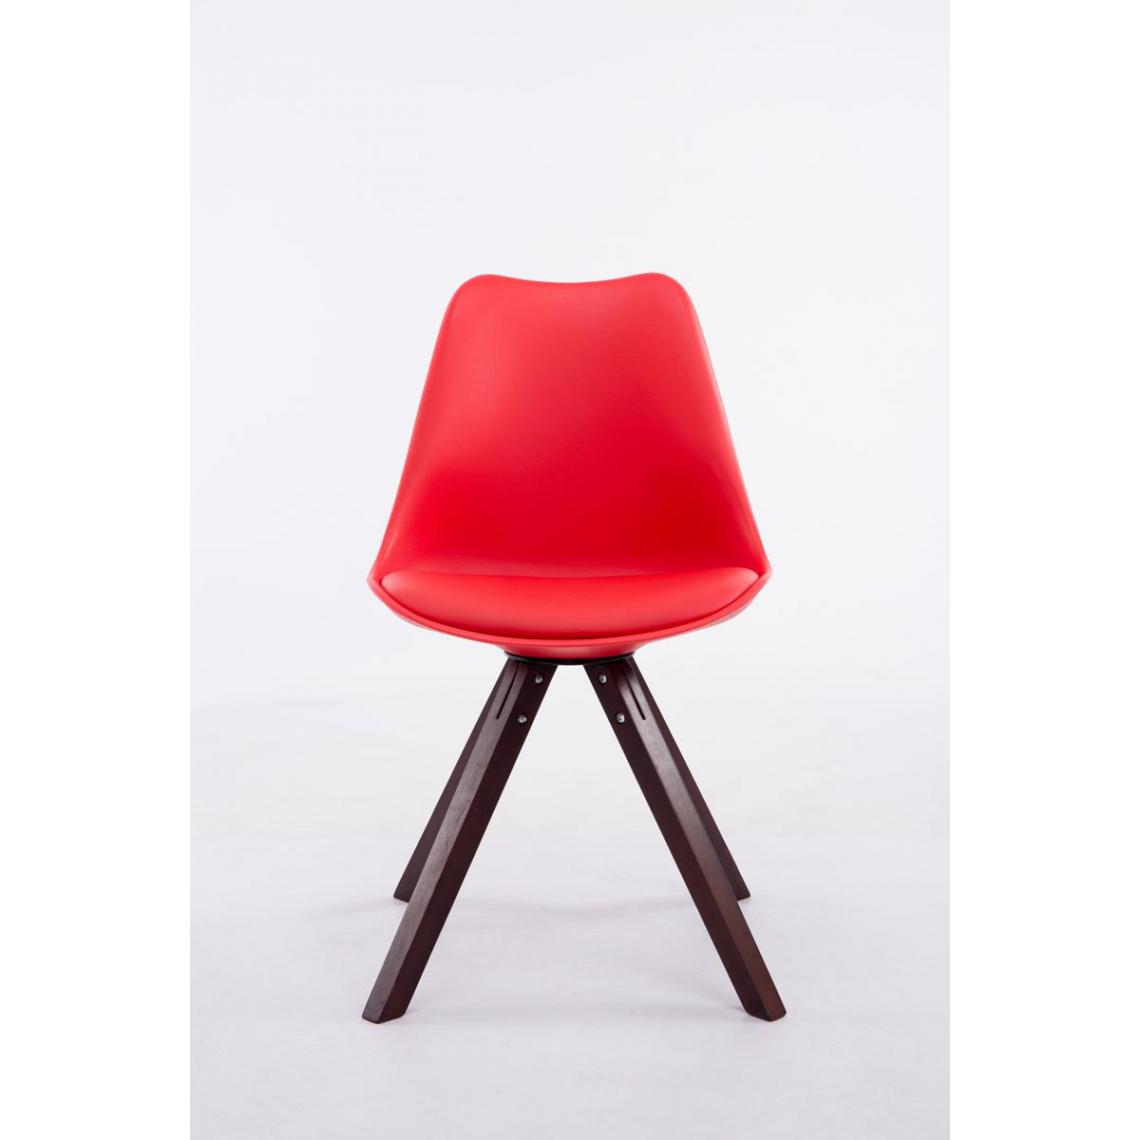 Icaverne - Moderne Chaise visiteur carrée categorie Katmandou Cappuccino couleur rouge - Chaises